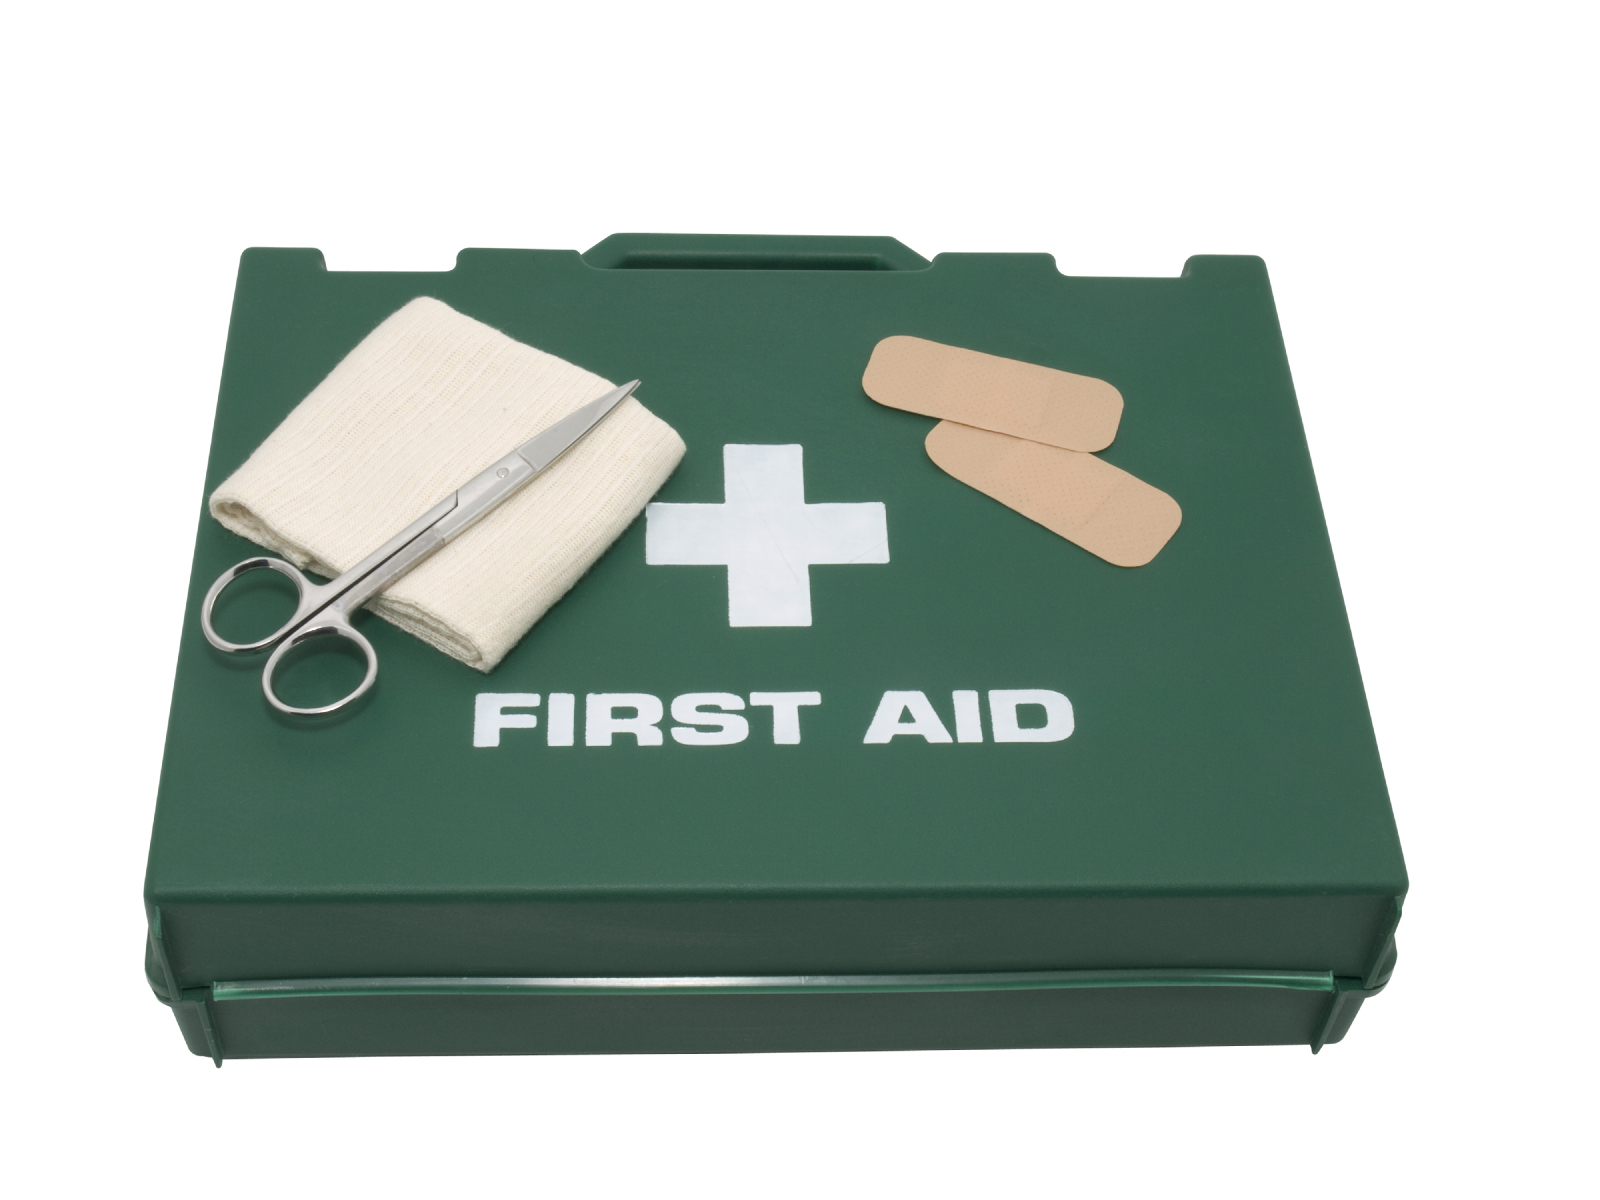 1st aid box